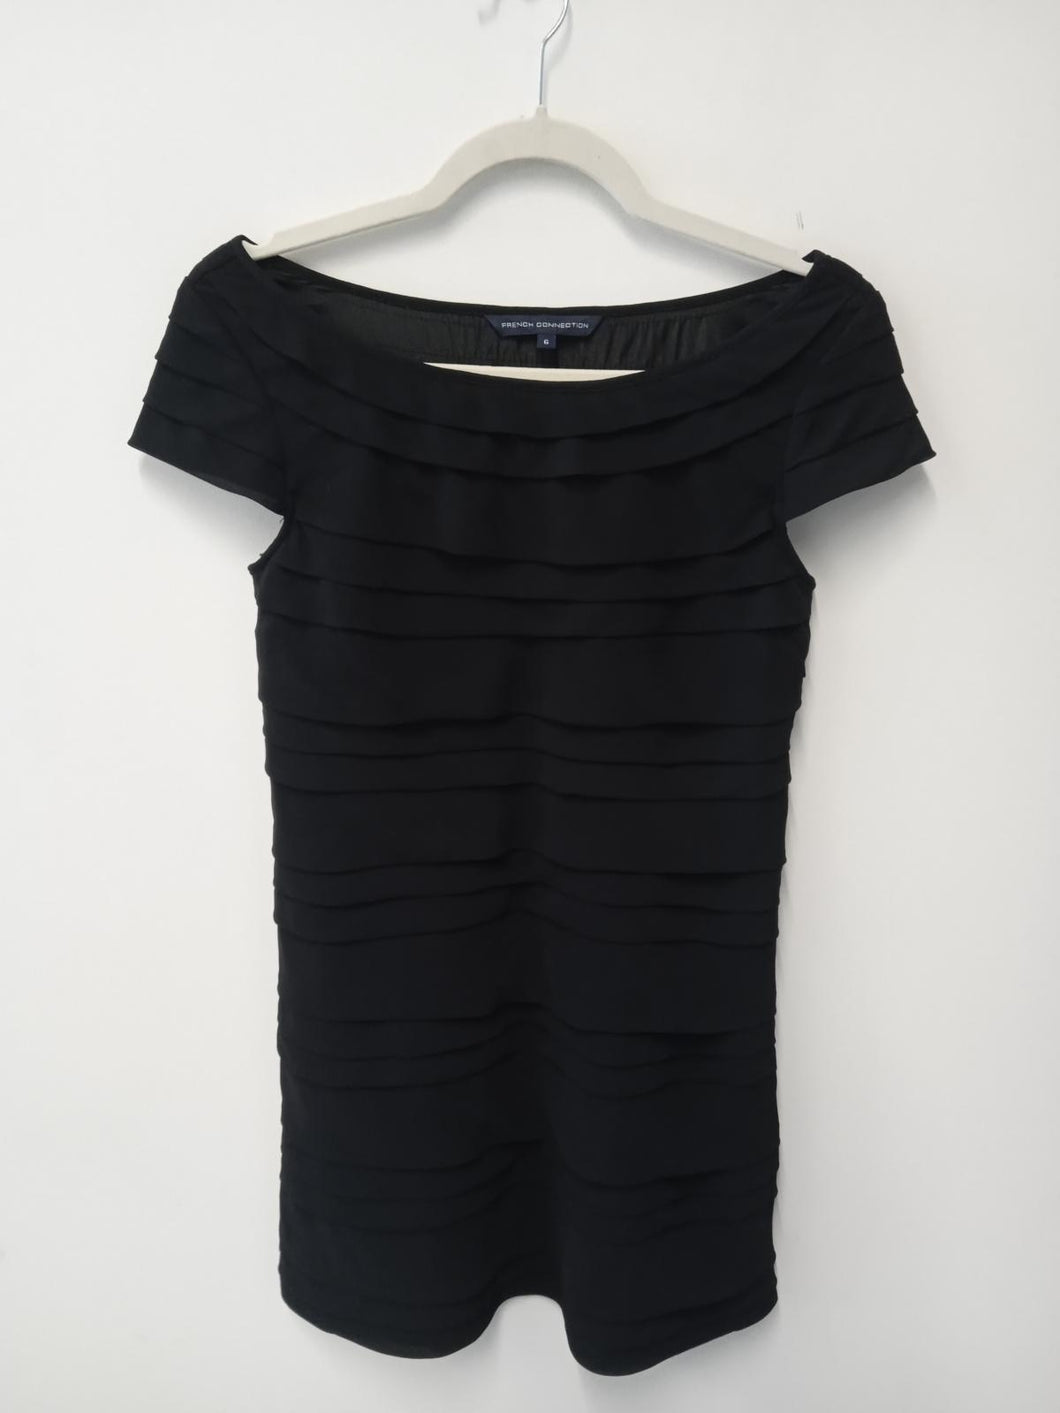 FRENCH CONNECTION Ladies Black Short Sleeve Boat Neck Mini Dress Size UK6